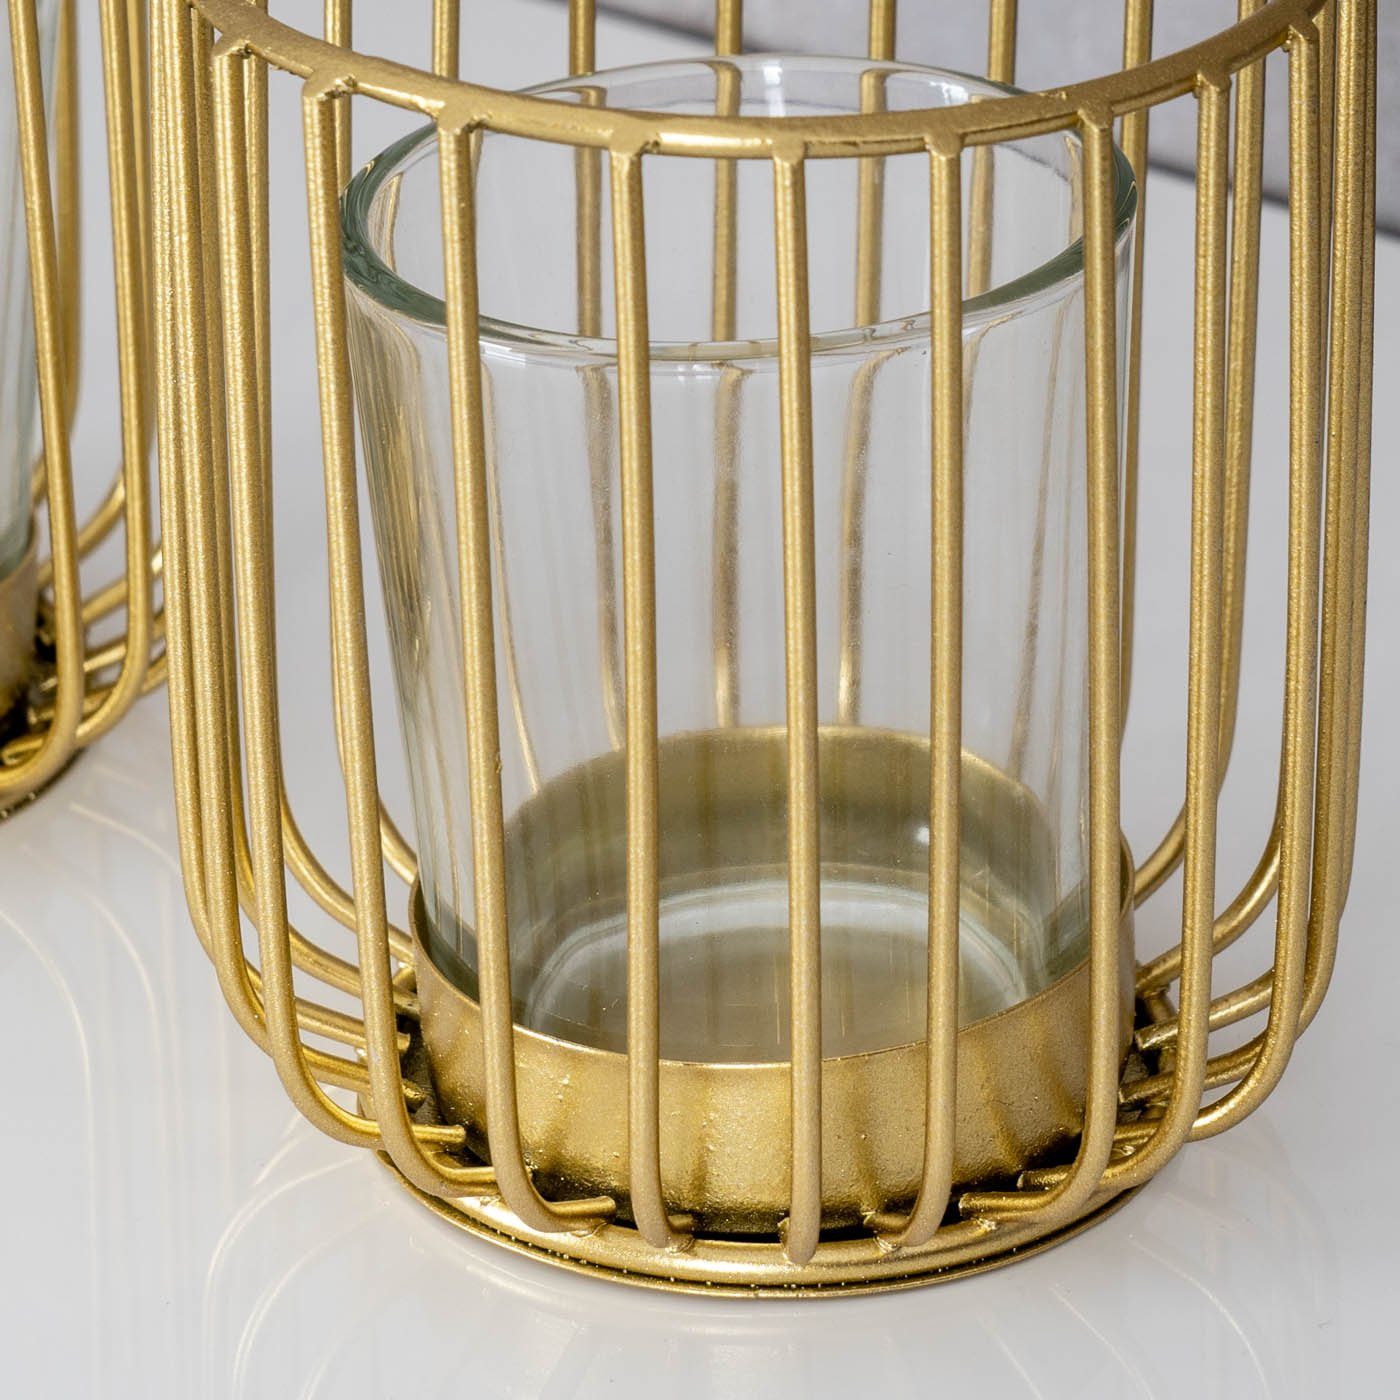 Levandeo® Teelichthalter, 2er Set Teelichthalter Gold Kerzenhalter Windlicht Glas Metall